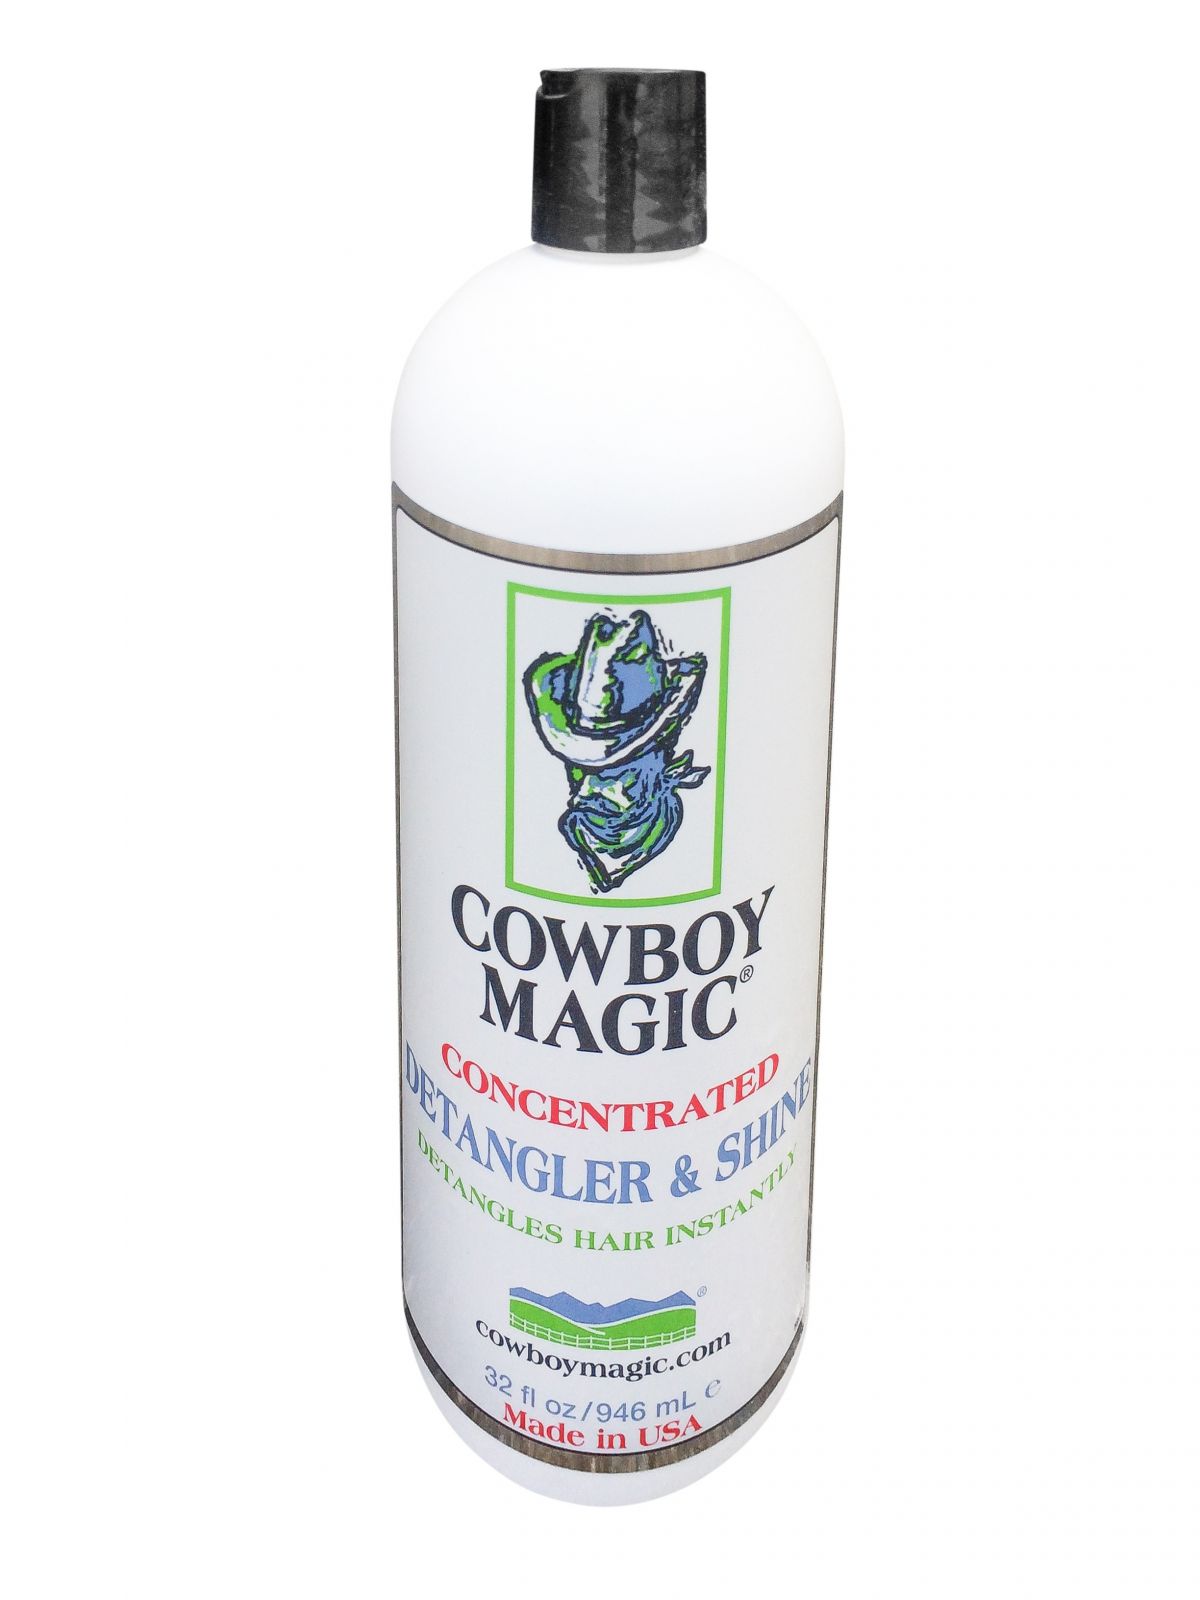 Cowboy Magic Concentrated Detangler & Shine - 32 oz bottle